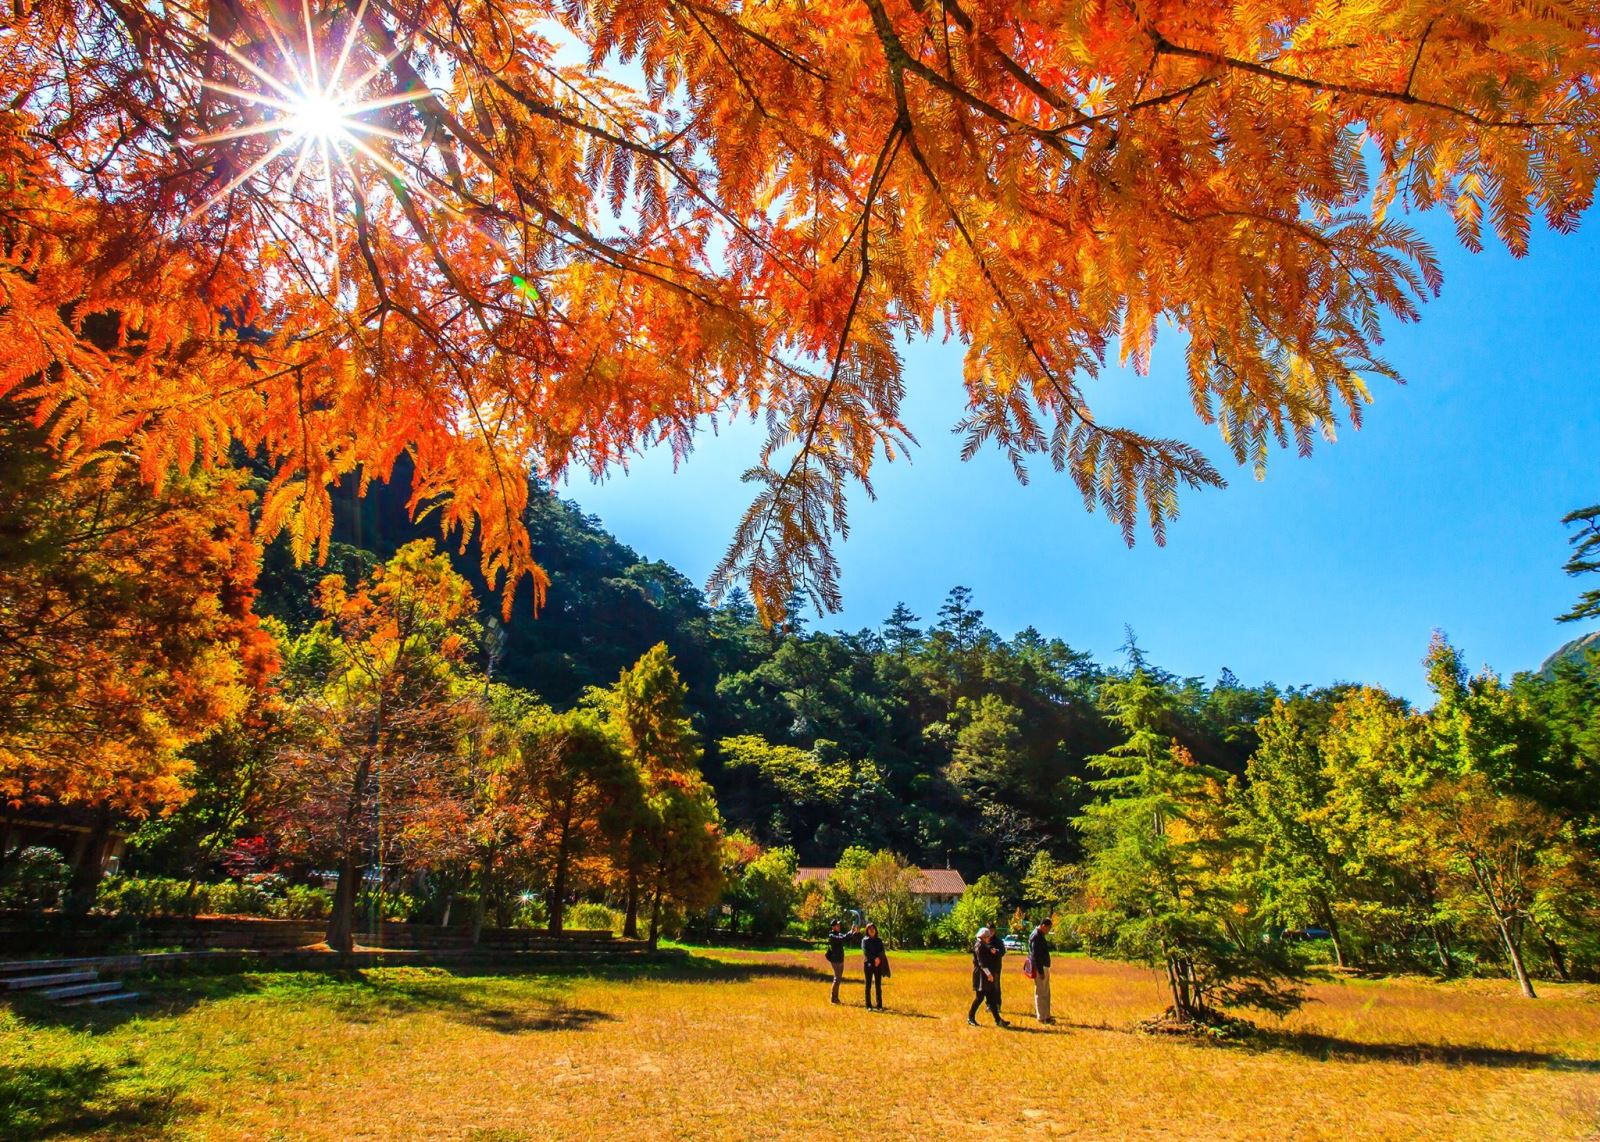 Thời điểm lá phong đỏ đẹp nhất ở Wuling là vào giữa tháng 10, đầu tháng 11